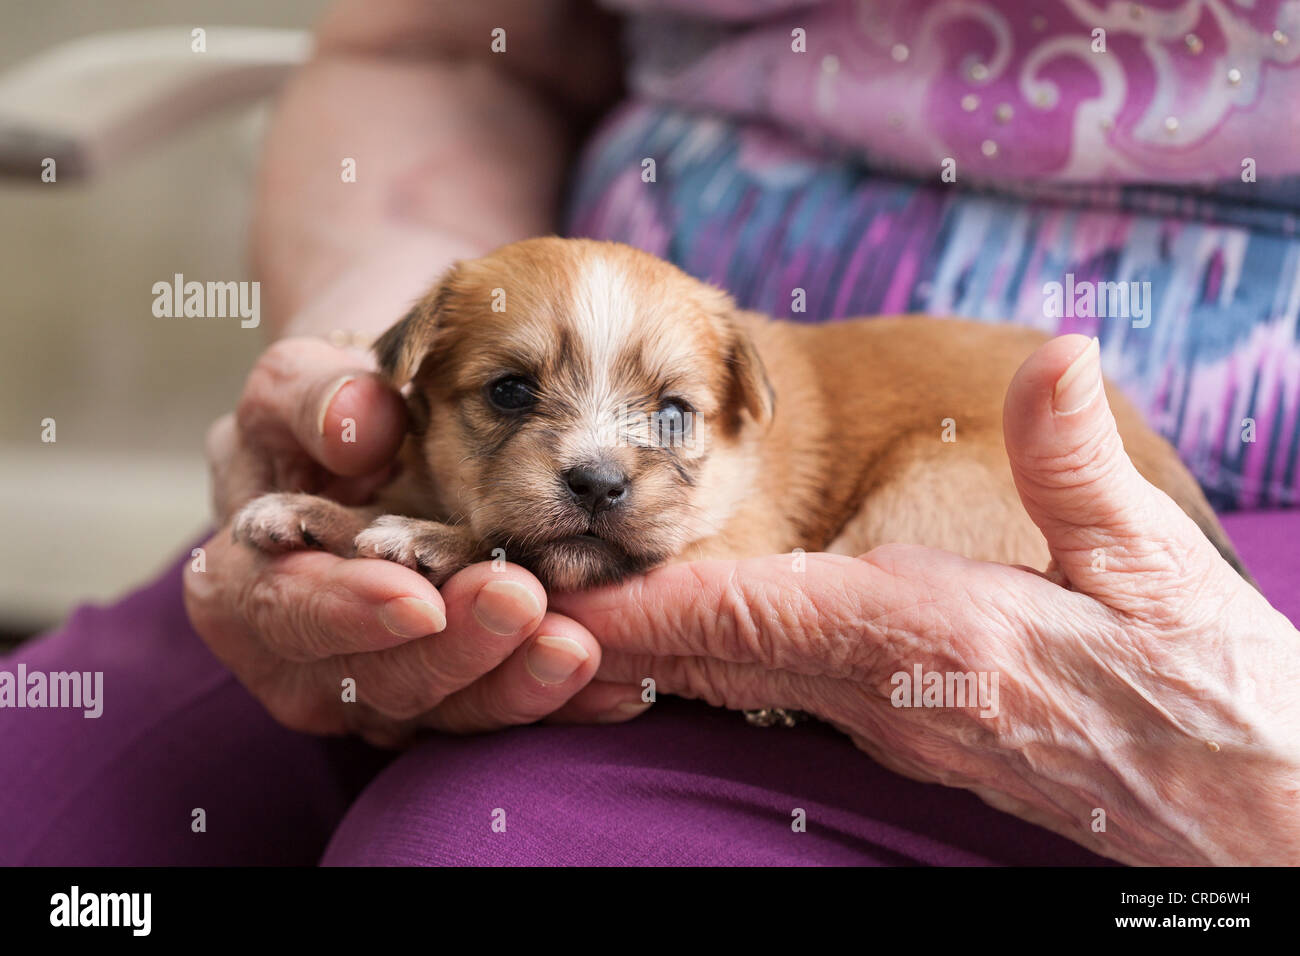 Alte Hasen, neue Hund. Eine ältere Frau hält einen junger Welpe Hund in  ihre faltigen Hände Stockfotografie - Alamy